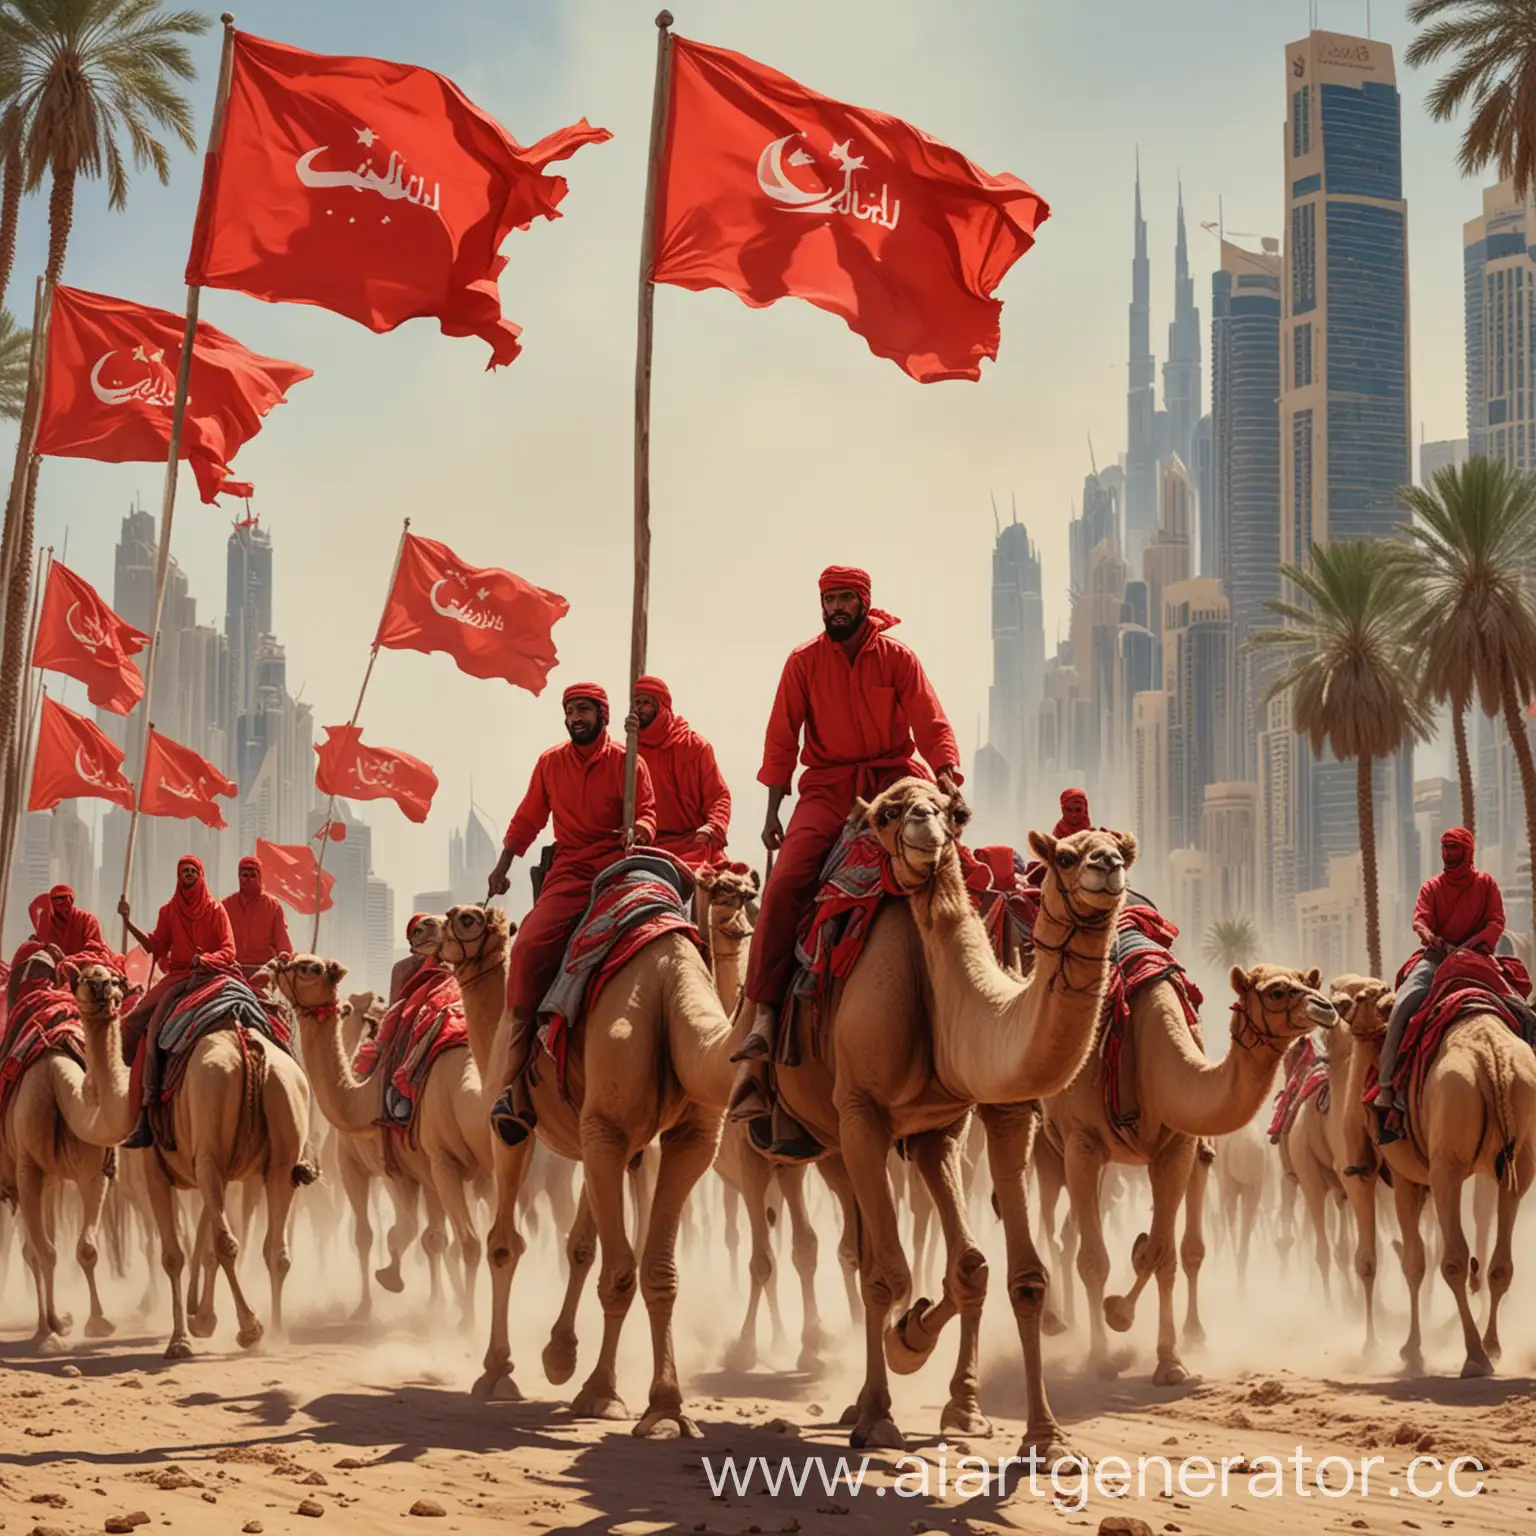 социалистический рабочий и крестьянин в Дубае устраивают коммунистическую революцию с красным флагом верхом на верблюдах они быстро скачут в атаку на фоне Дубайских небоскребов и пальм, яростные лица, большие лица крупным планом, бой, столкновение, соцреализм, плакат